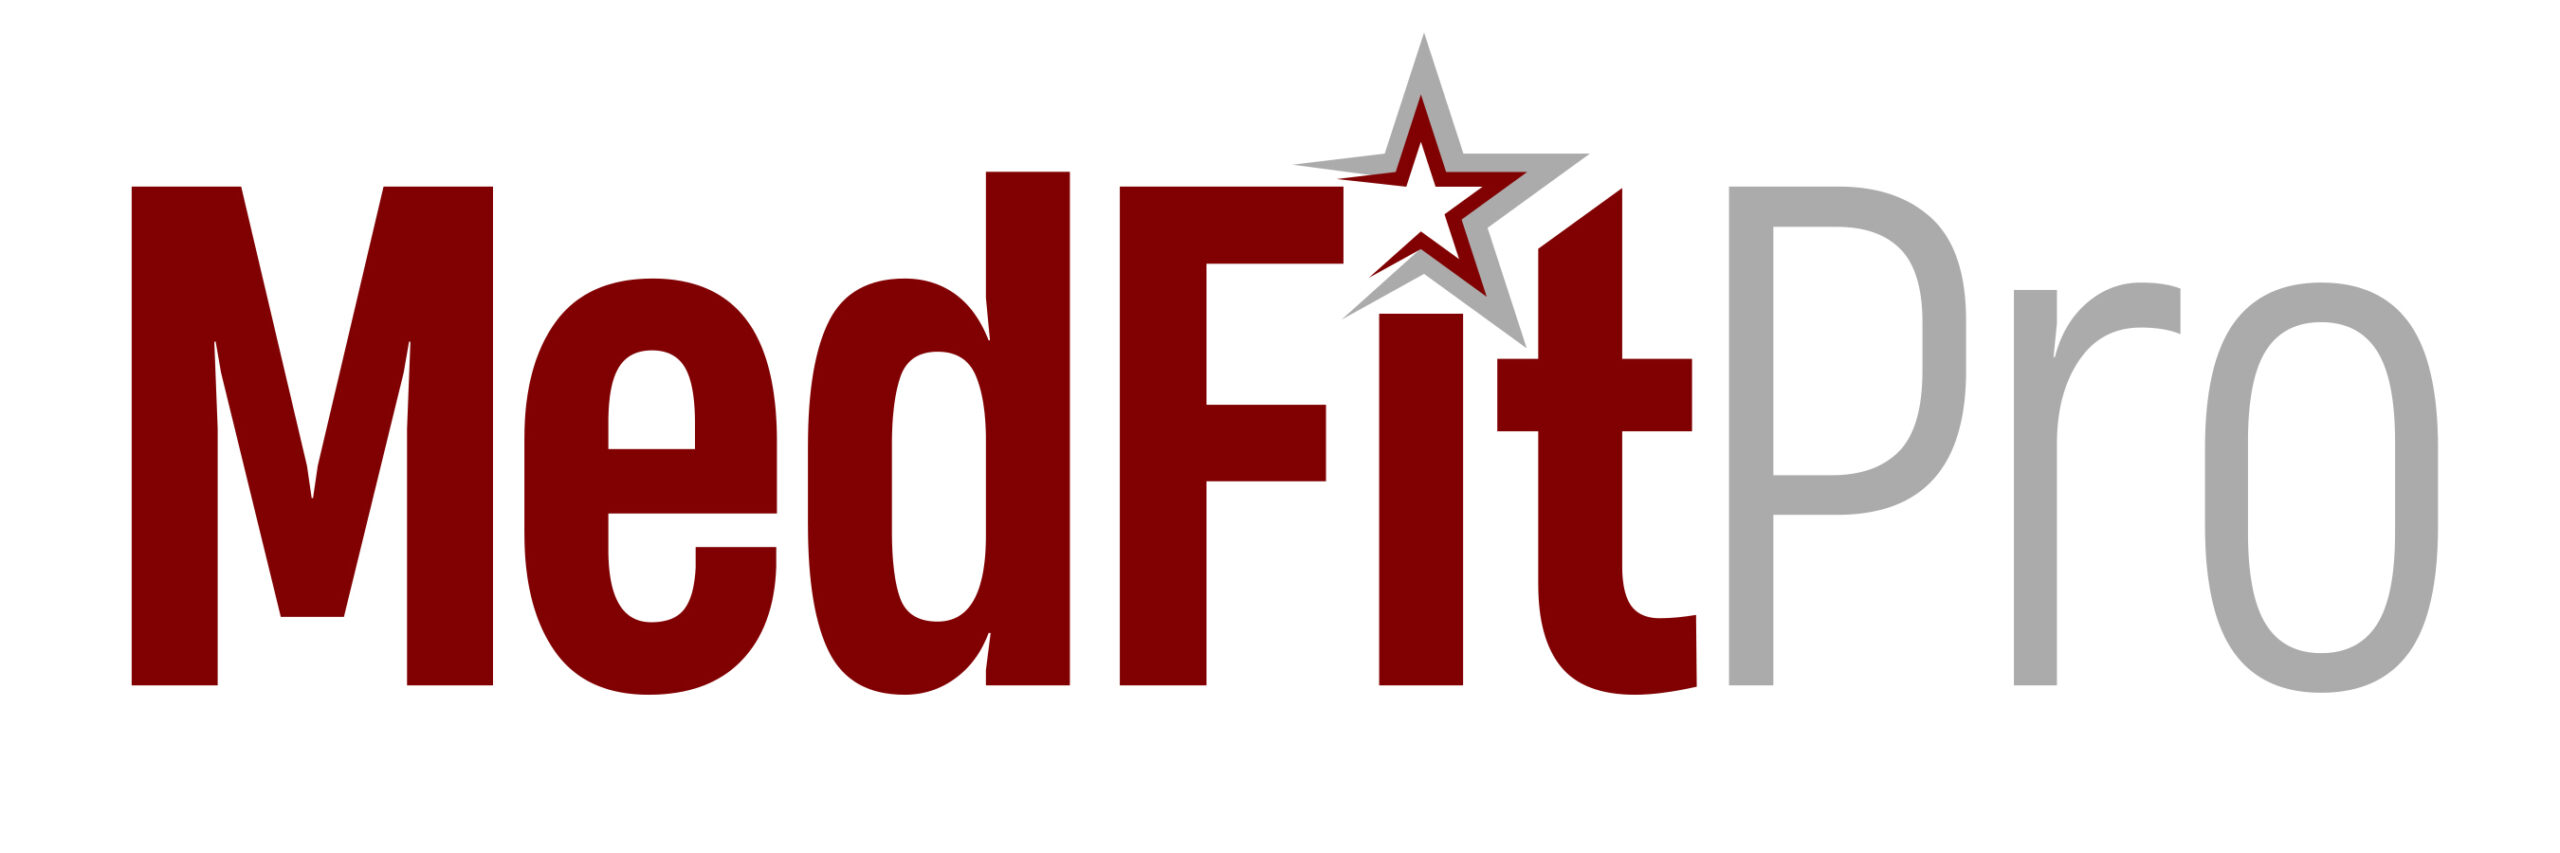 MedFit Pro Logo scaled